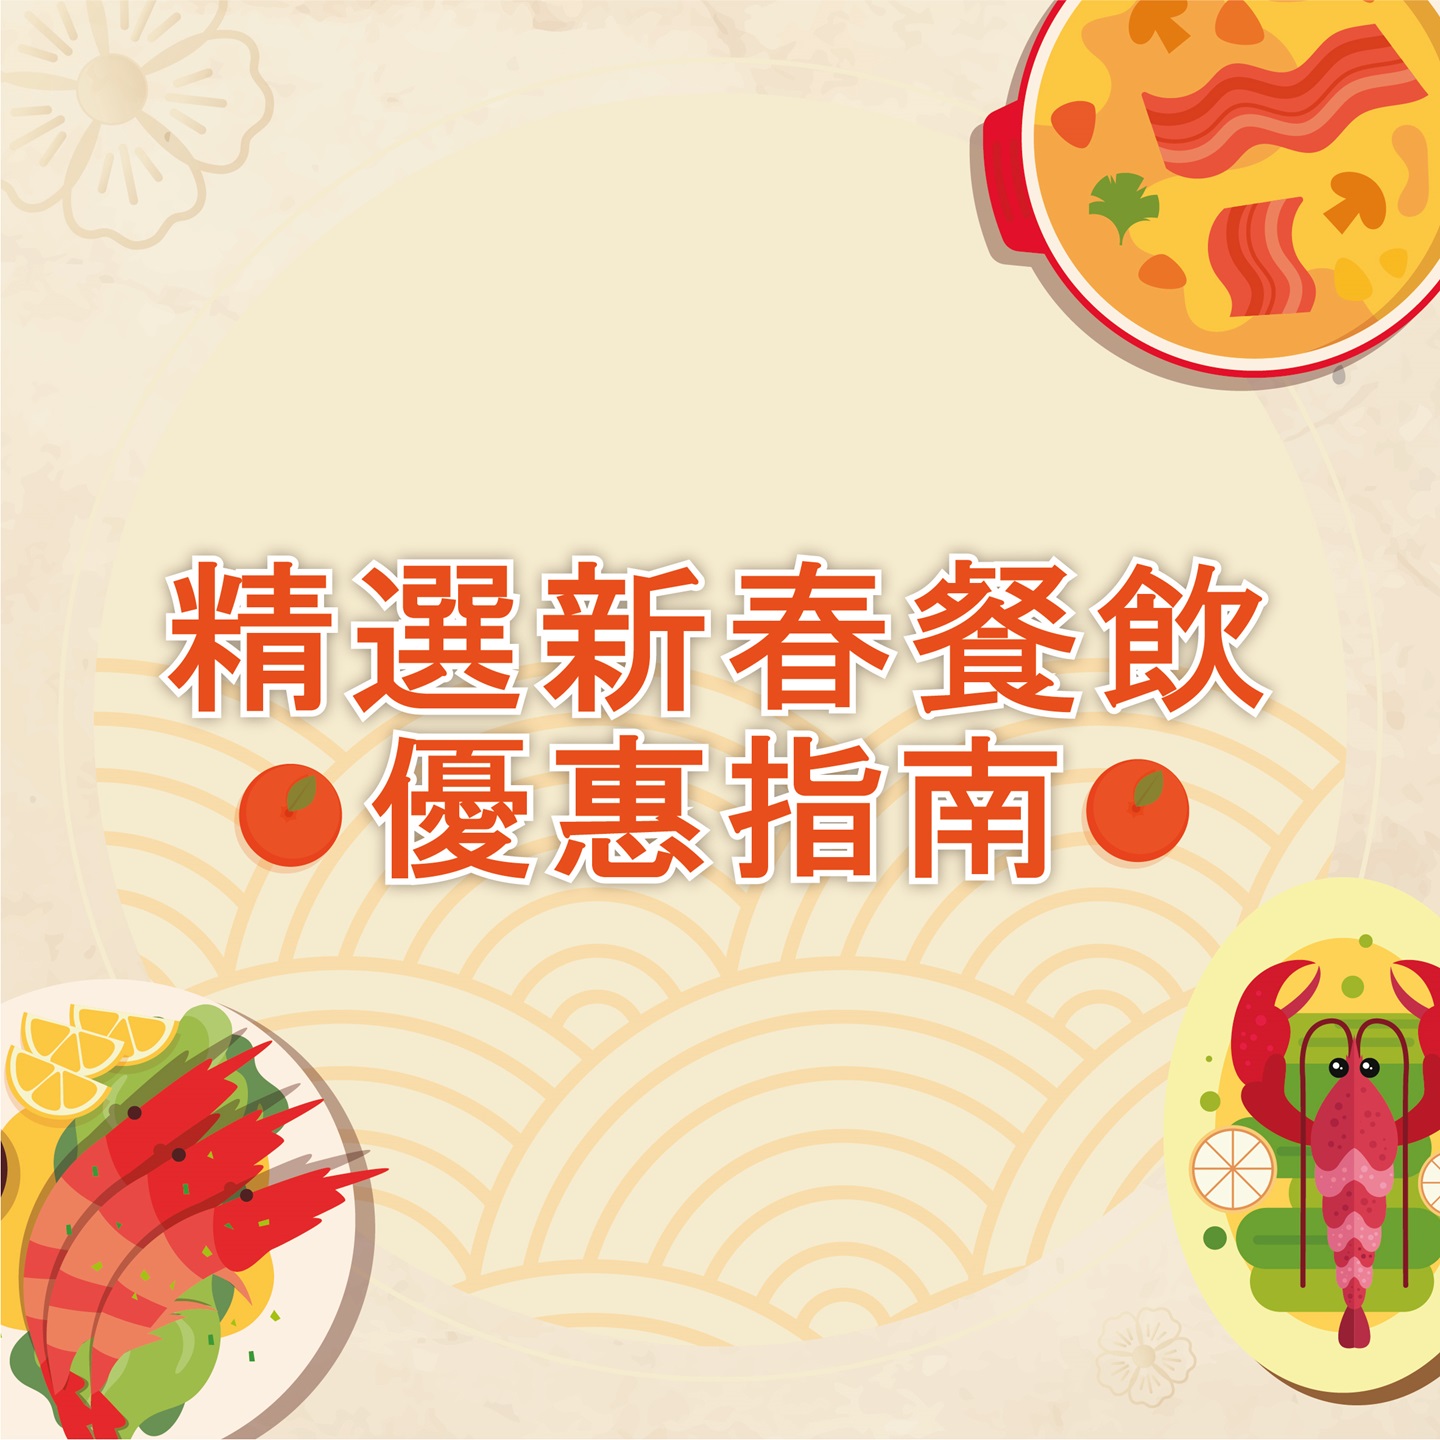 CNY Dining Promotion